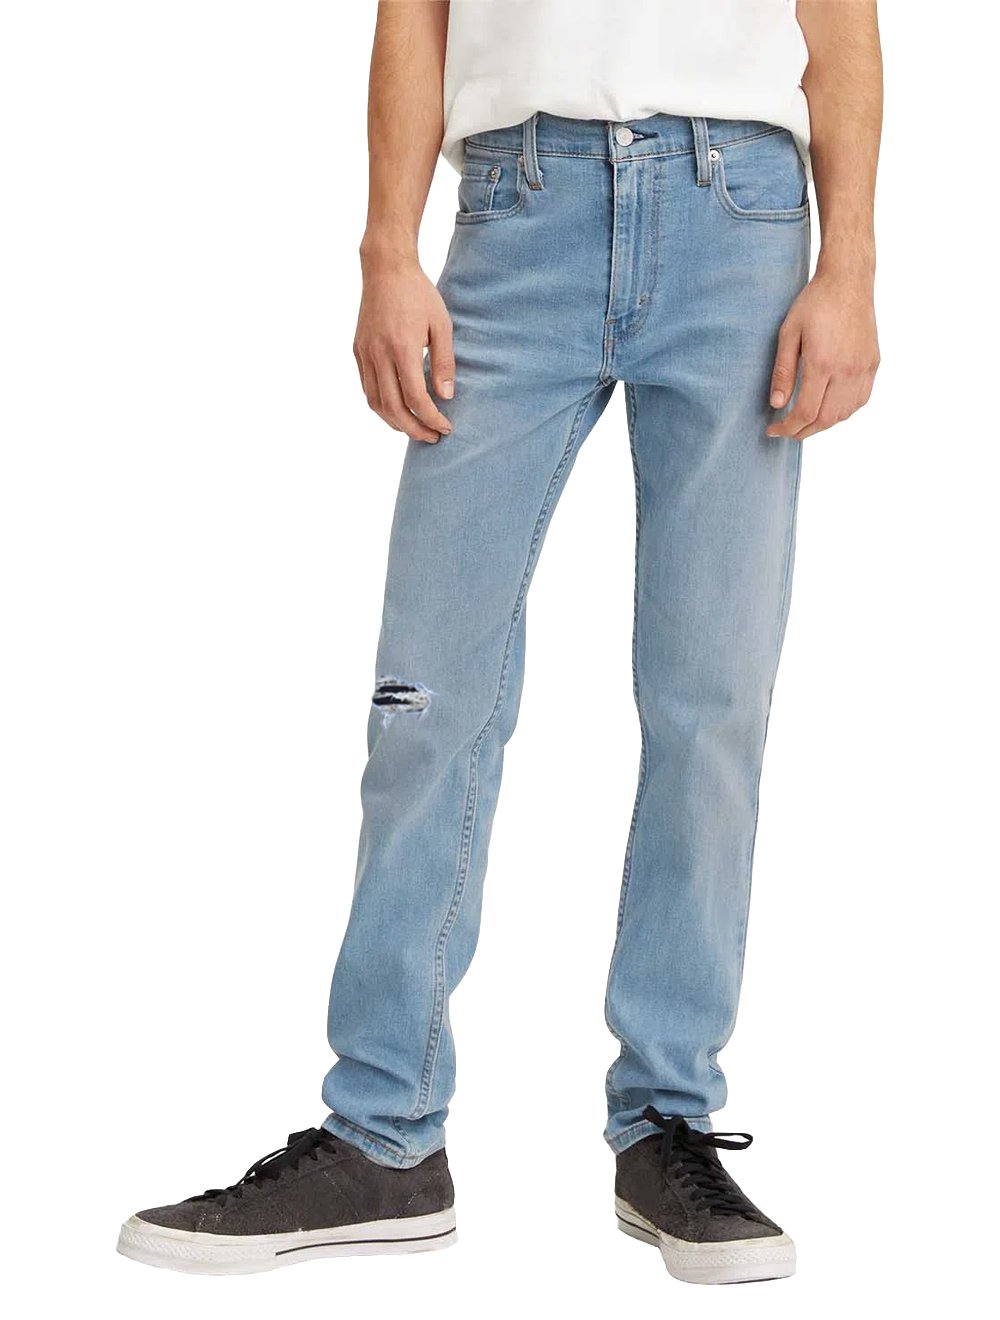 Calça Levis Jeans Masculina 512 Slim Taper Stretch Rend Blu Sky Clara